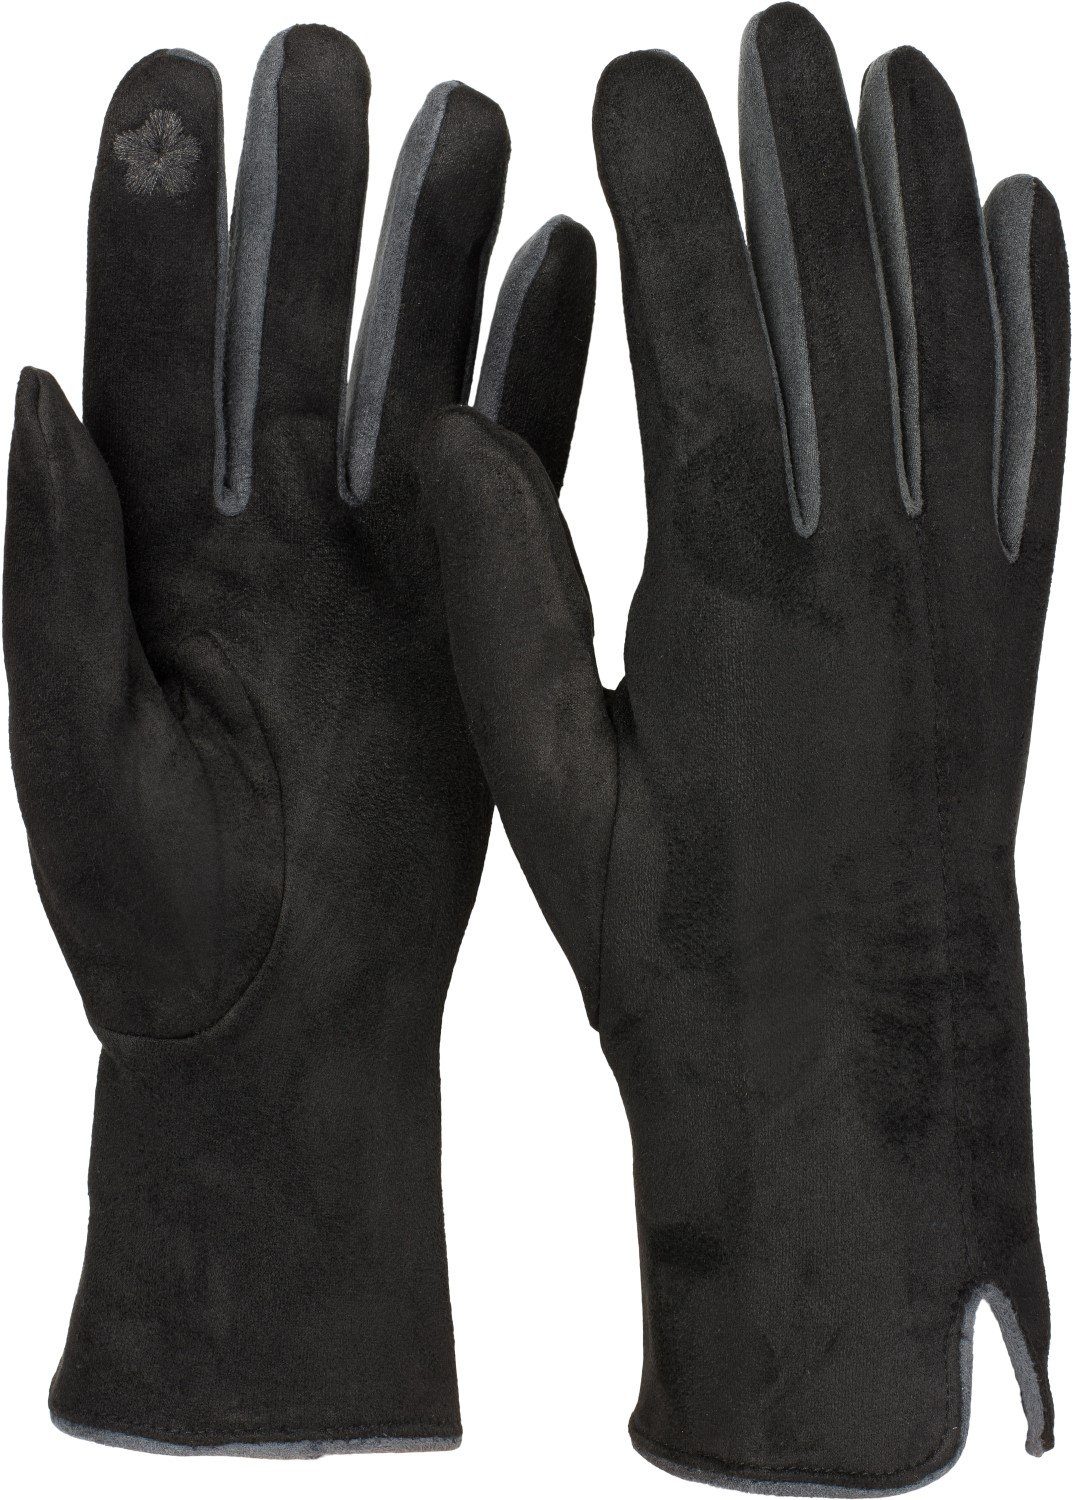 Fleecehandschuhe Touchscreen Kontrast Handschuhe styleBREAKER Schwarz